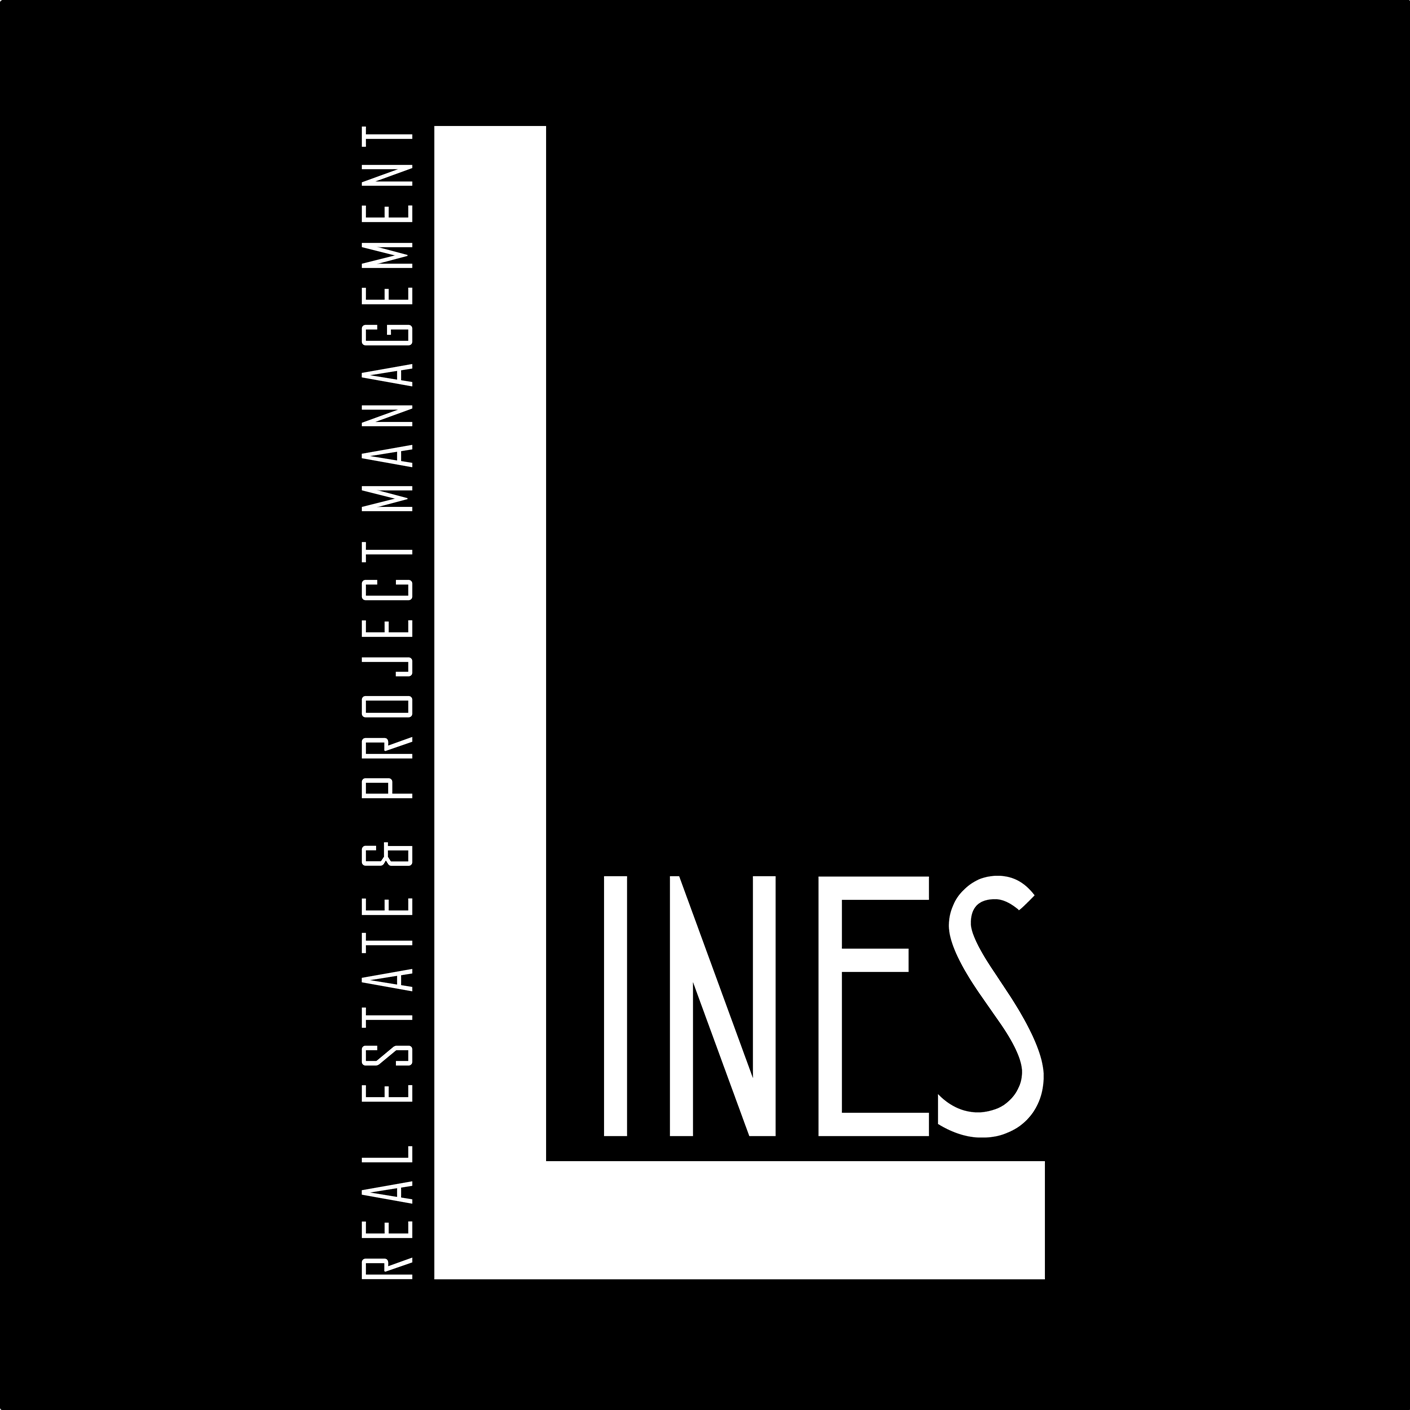 Lines S.A.E